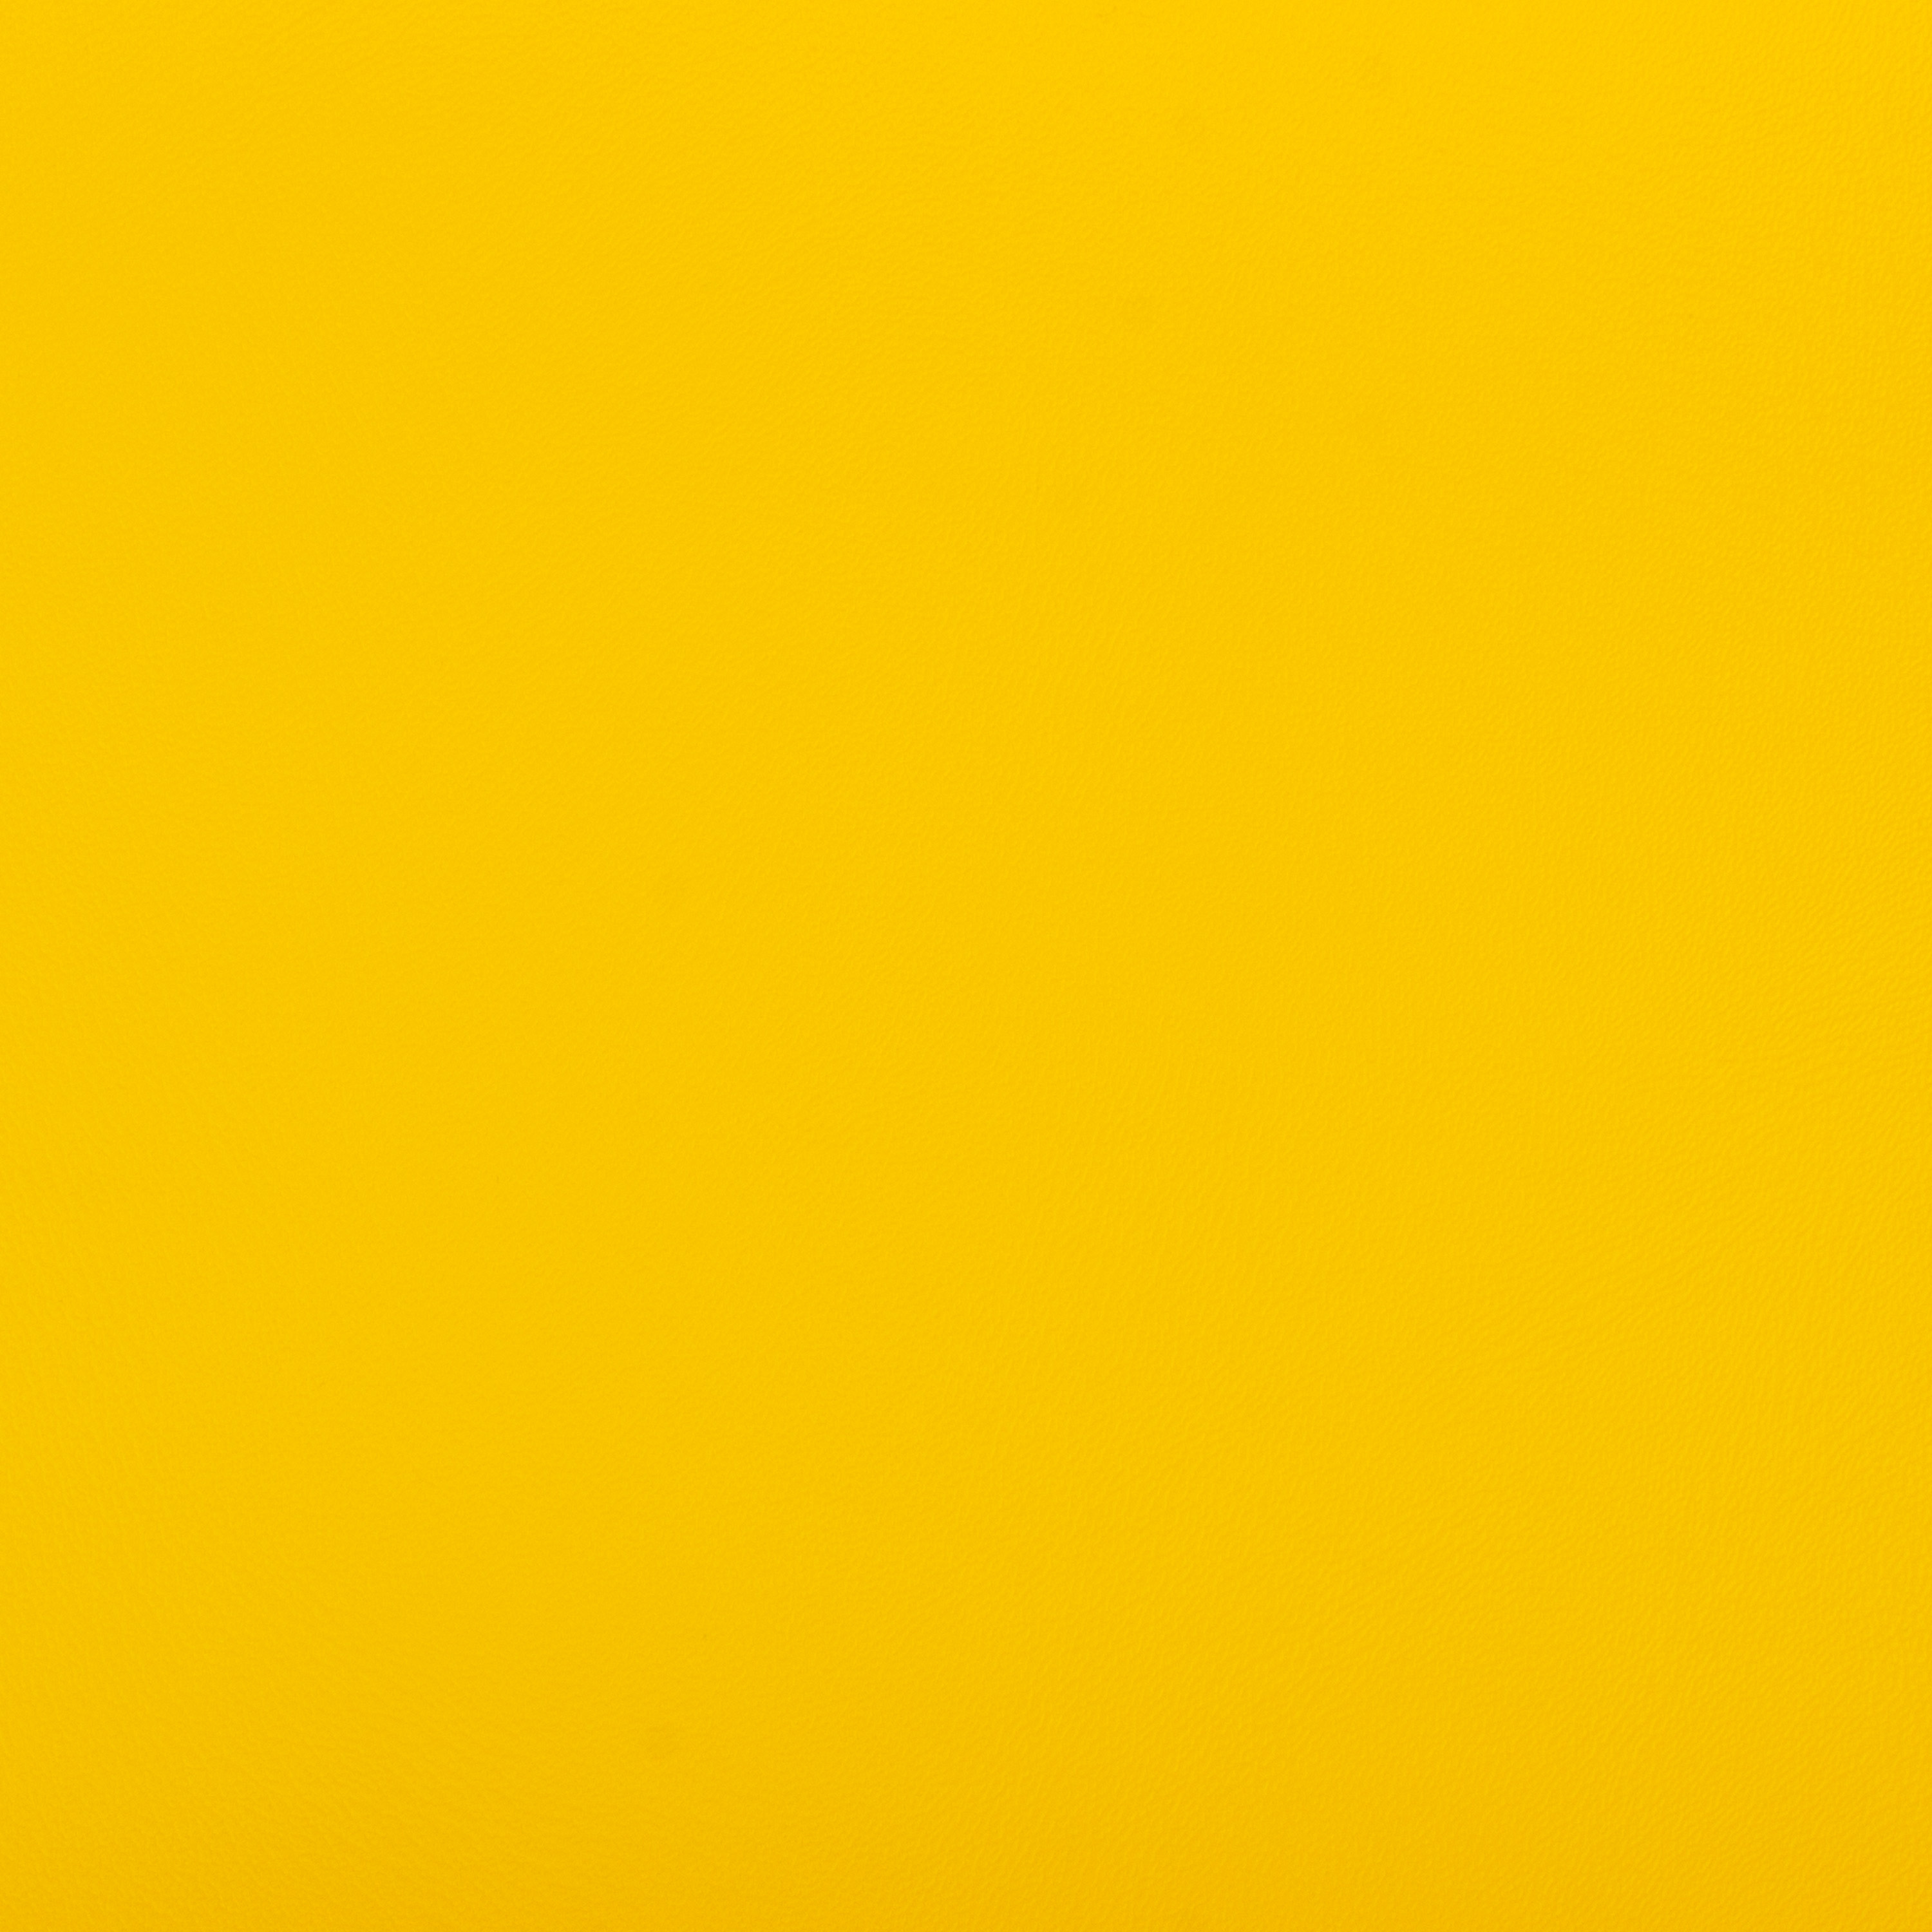 Babykörbchen 'klein', 90 x 60 x 20 cm, gelb